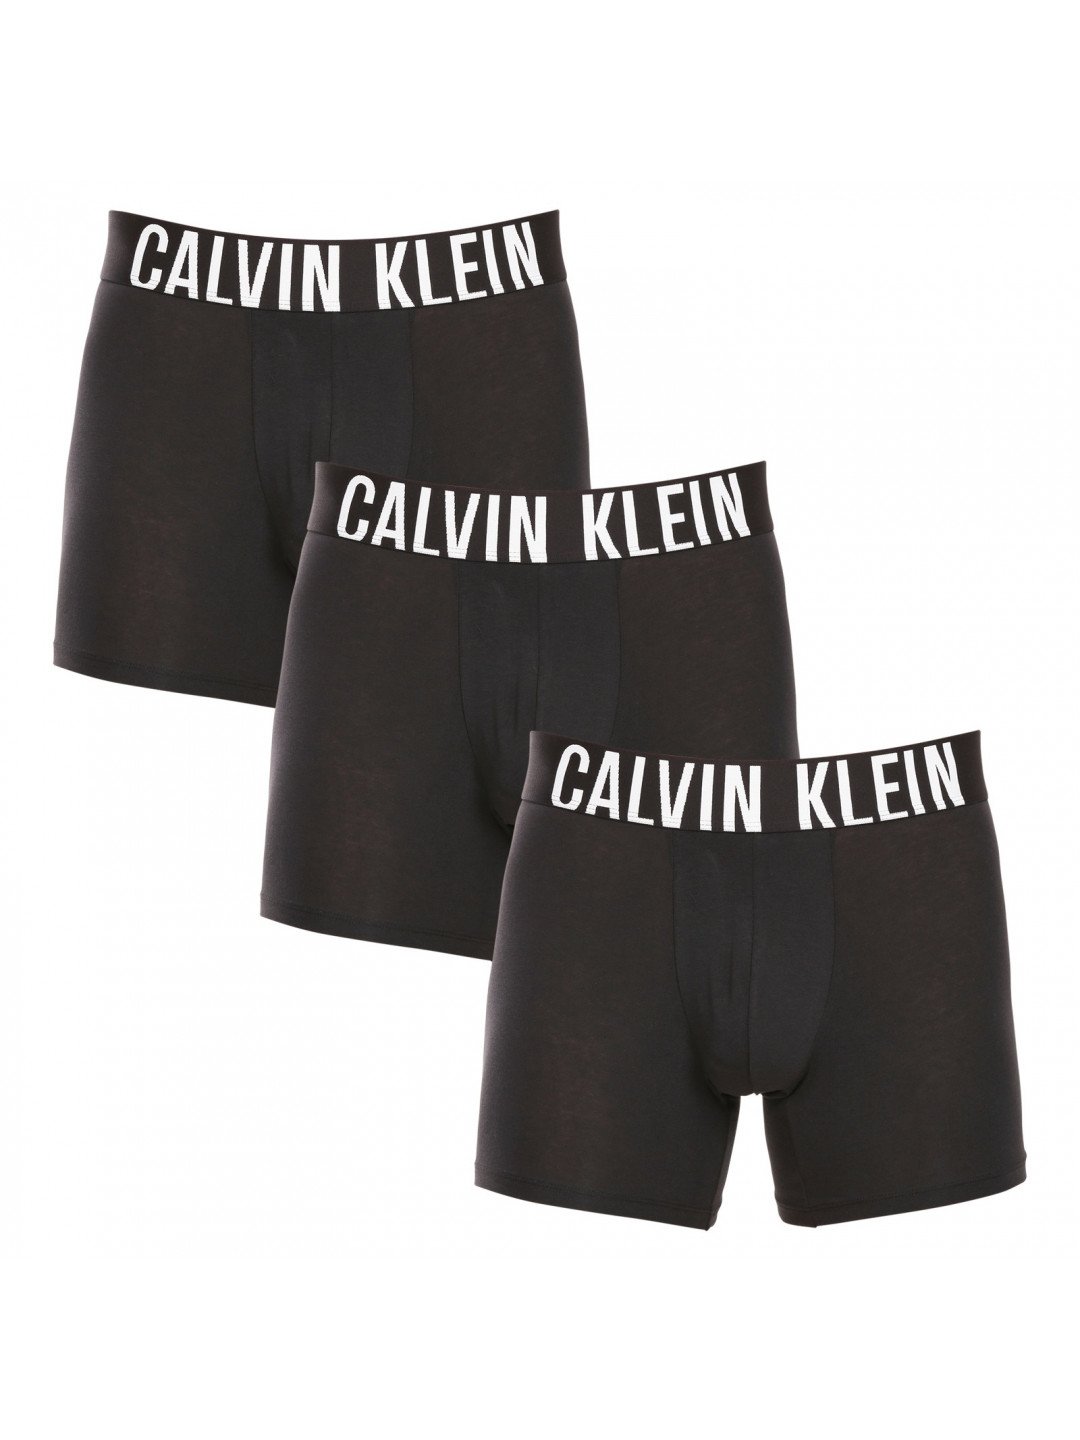 3PACK pánské boxerky Calvin Klein černé NB3609A-UB1 L